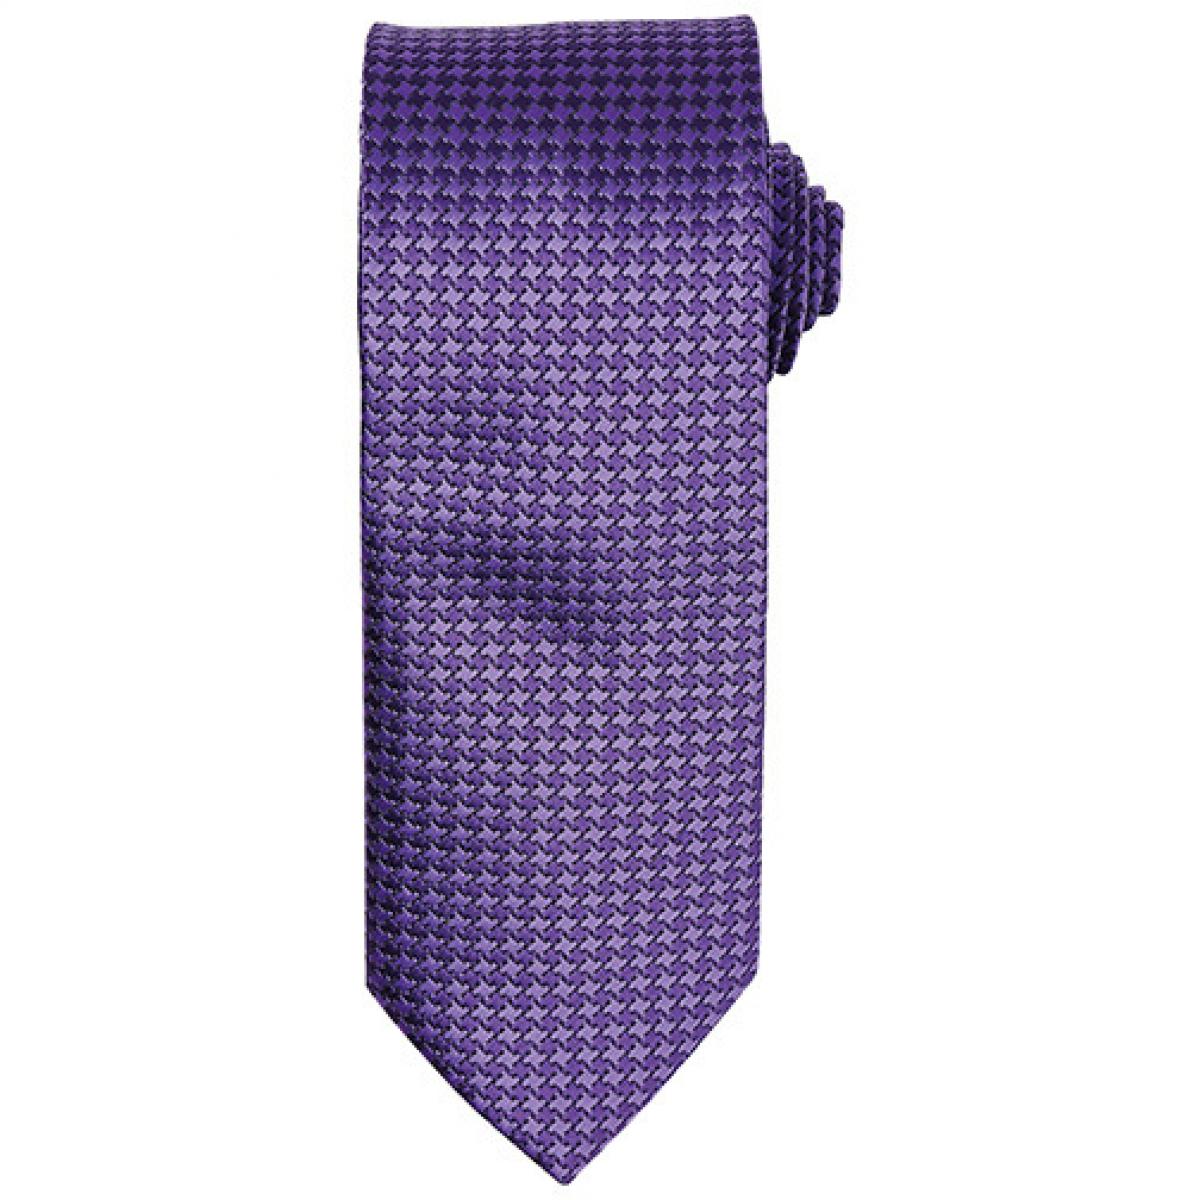 Hersteller: Premier Workwear Herstellernummer: PR787 Artikelbezeichnung: Puppy Tooth Tie / Breite 3" / 7,5 cm / Länge 57" / 144 cm Farbe: Purple